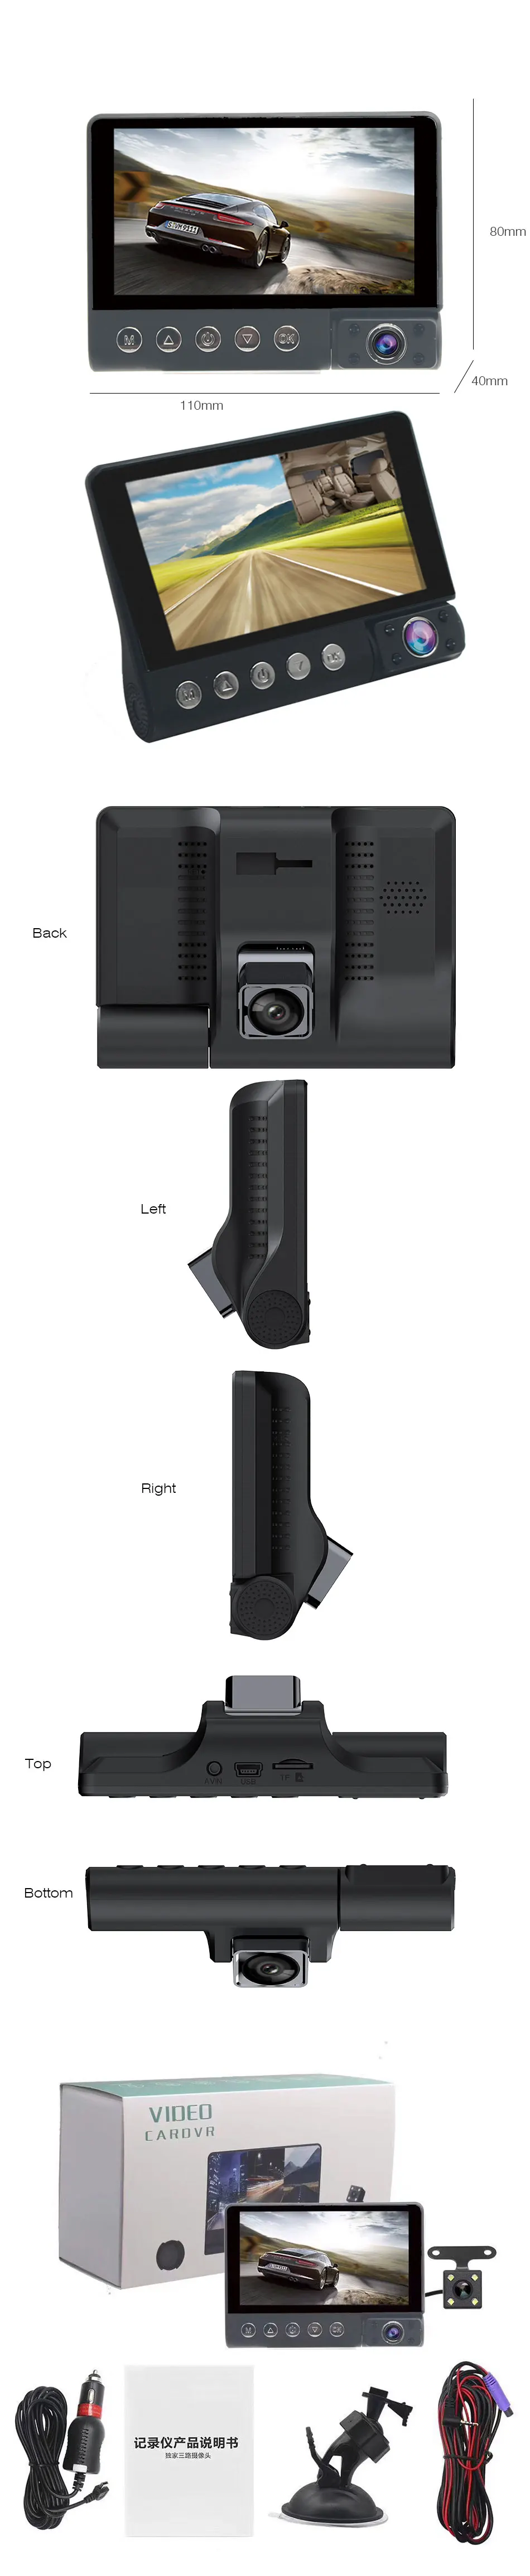 ANSTAR 4 дюйма Три водяного насоса объектив Видеорегистраторы для автомобилей HD 1080P 170 Широкий формат G-Сенсор Обнаружение движения с заднего вида Камера видео Регистраторы Dashcam